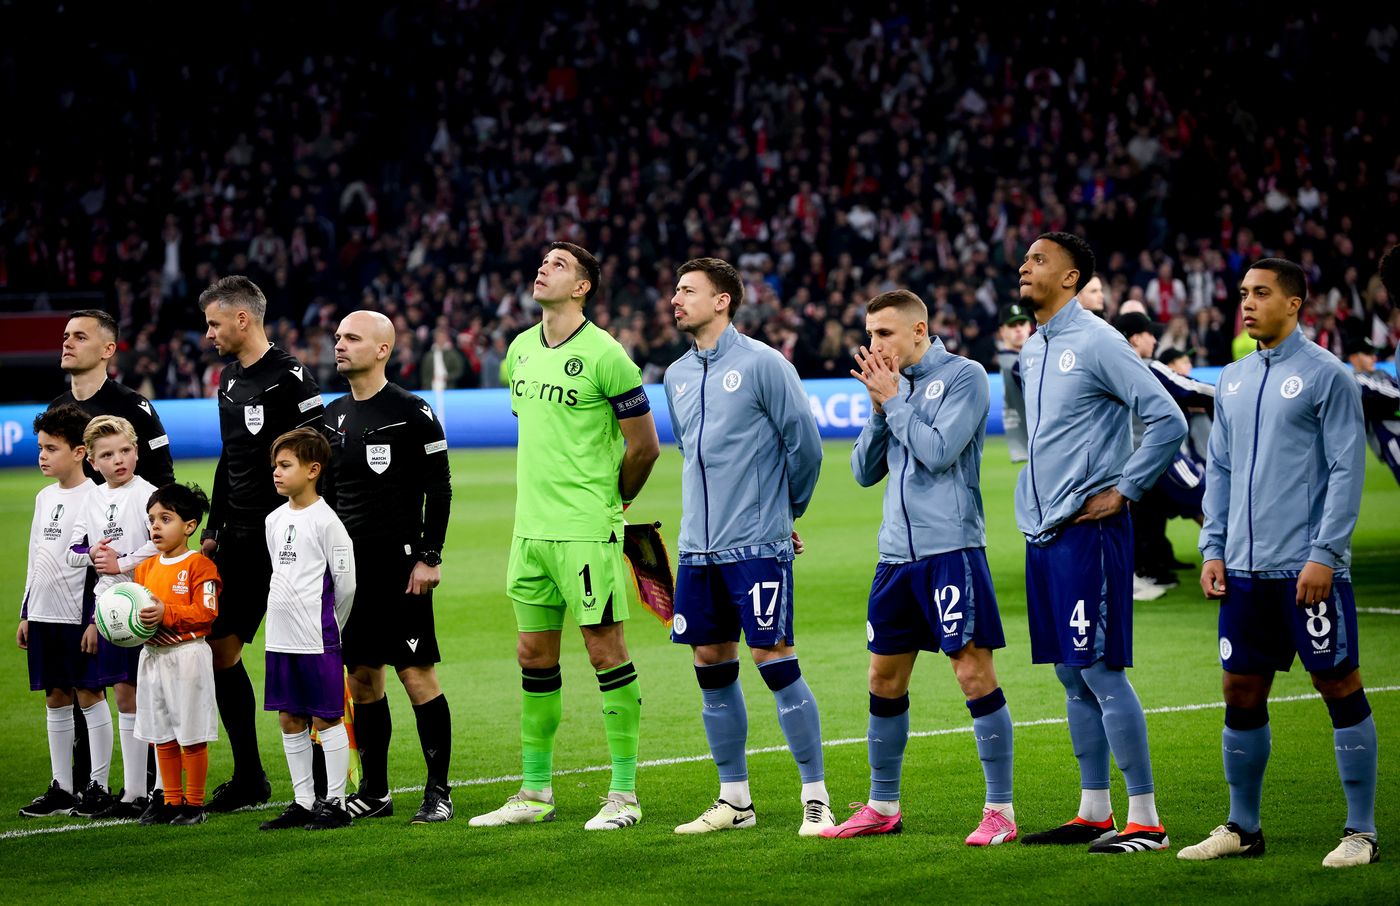 Villa hòa Ajax trong trận cầu có hai thẻ đỏ - Bóng Đá